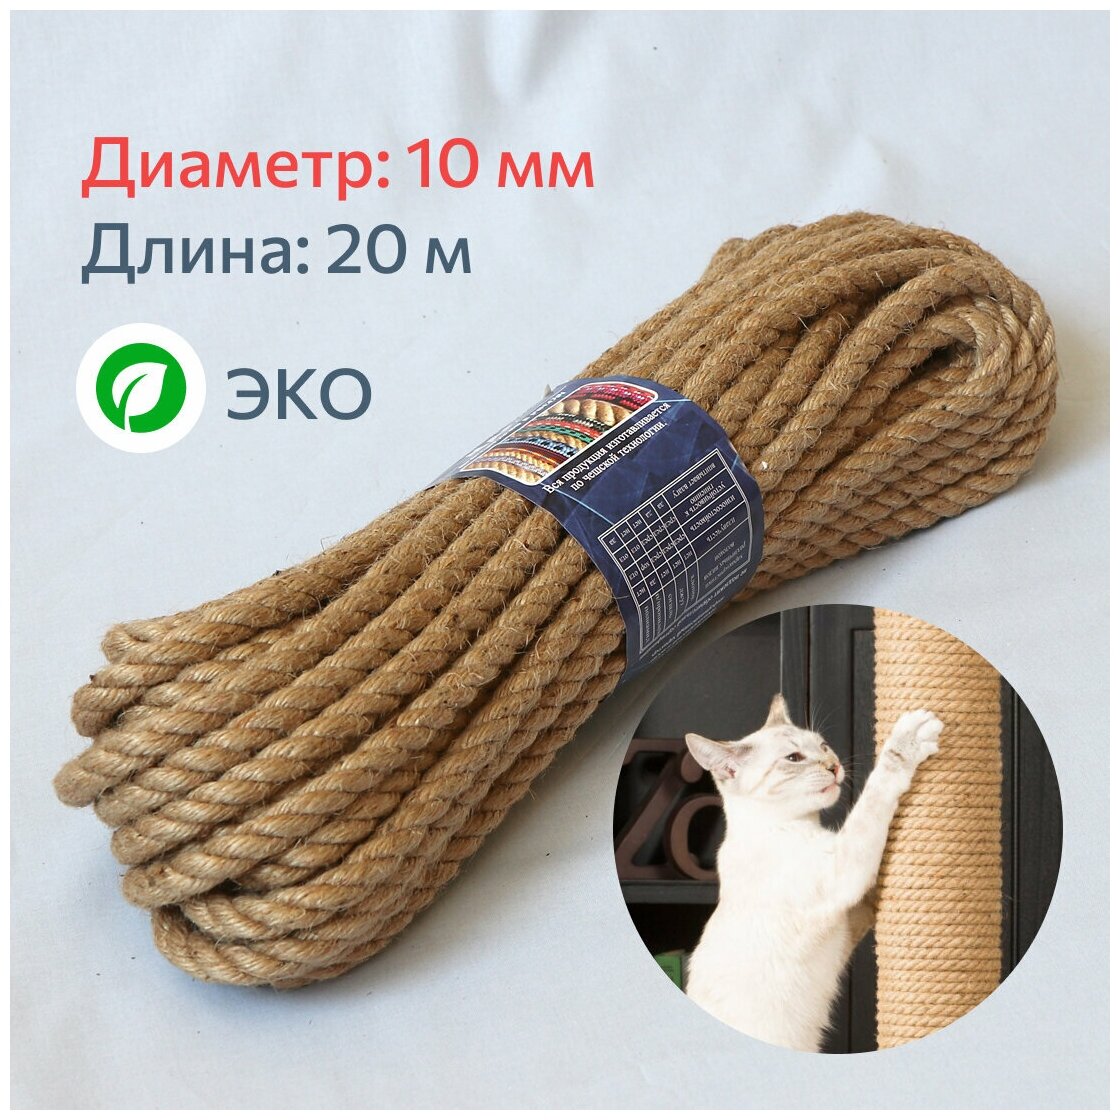 Канат джутовый для рукоделия и когтеточек для кошек 10 мм, 20 м, 400 кгс / шпагат джутовый / джутовая веревка / фал крепежный